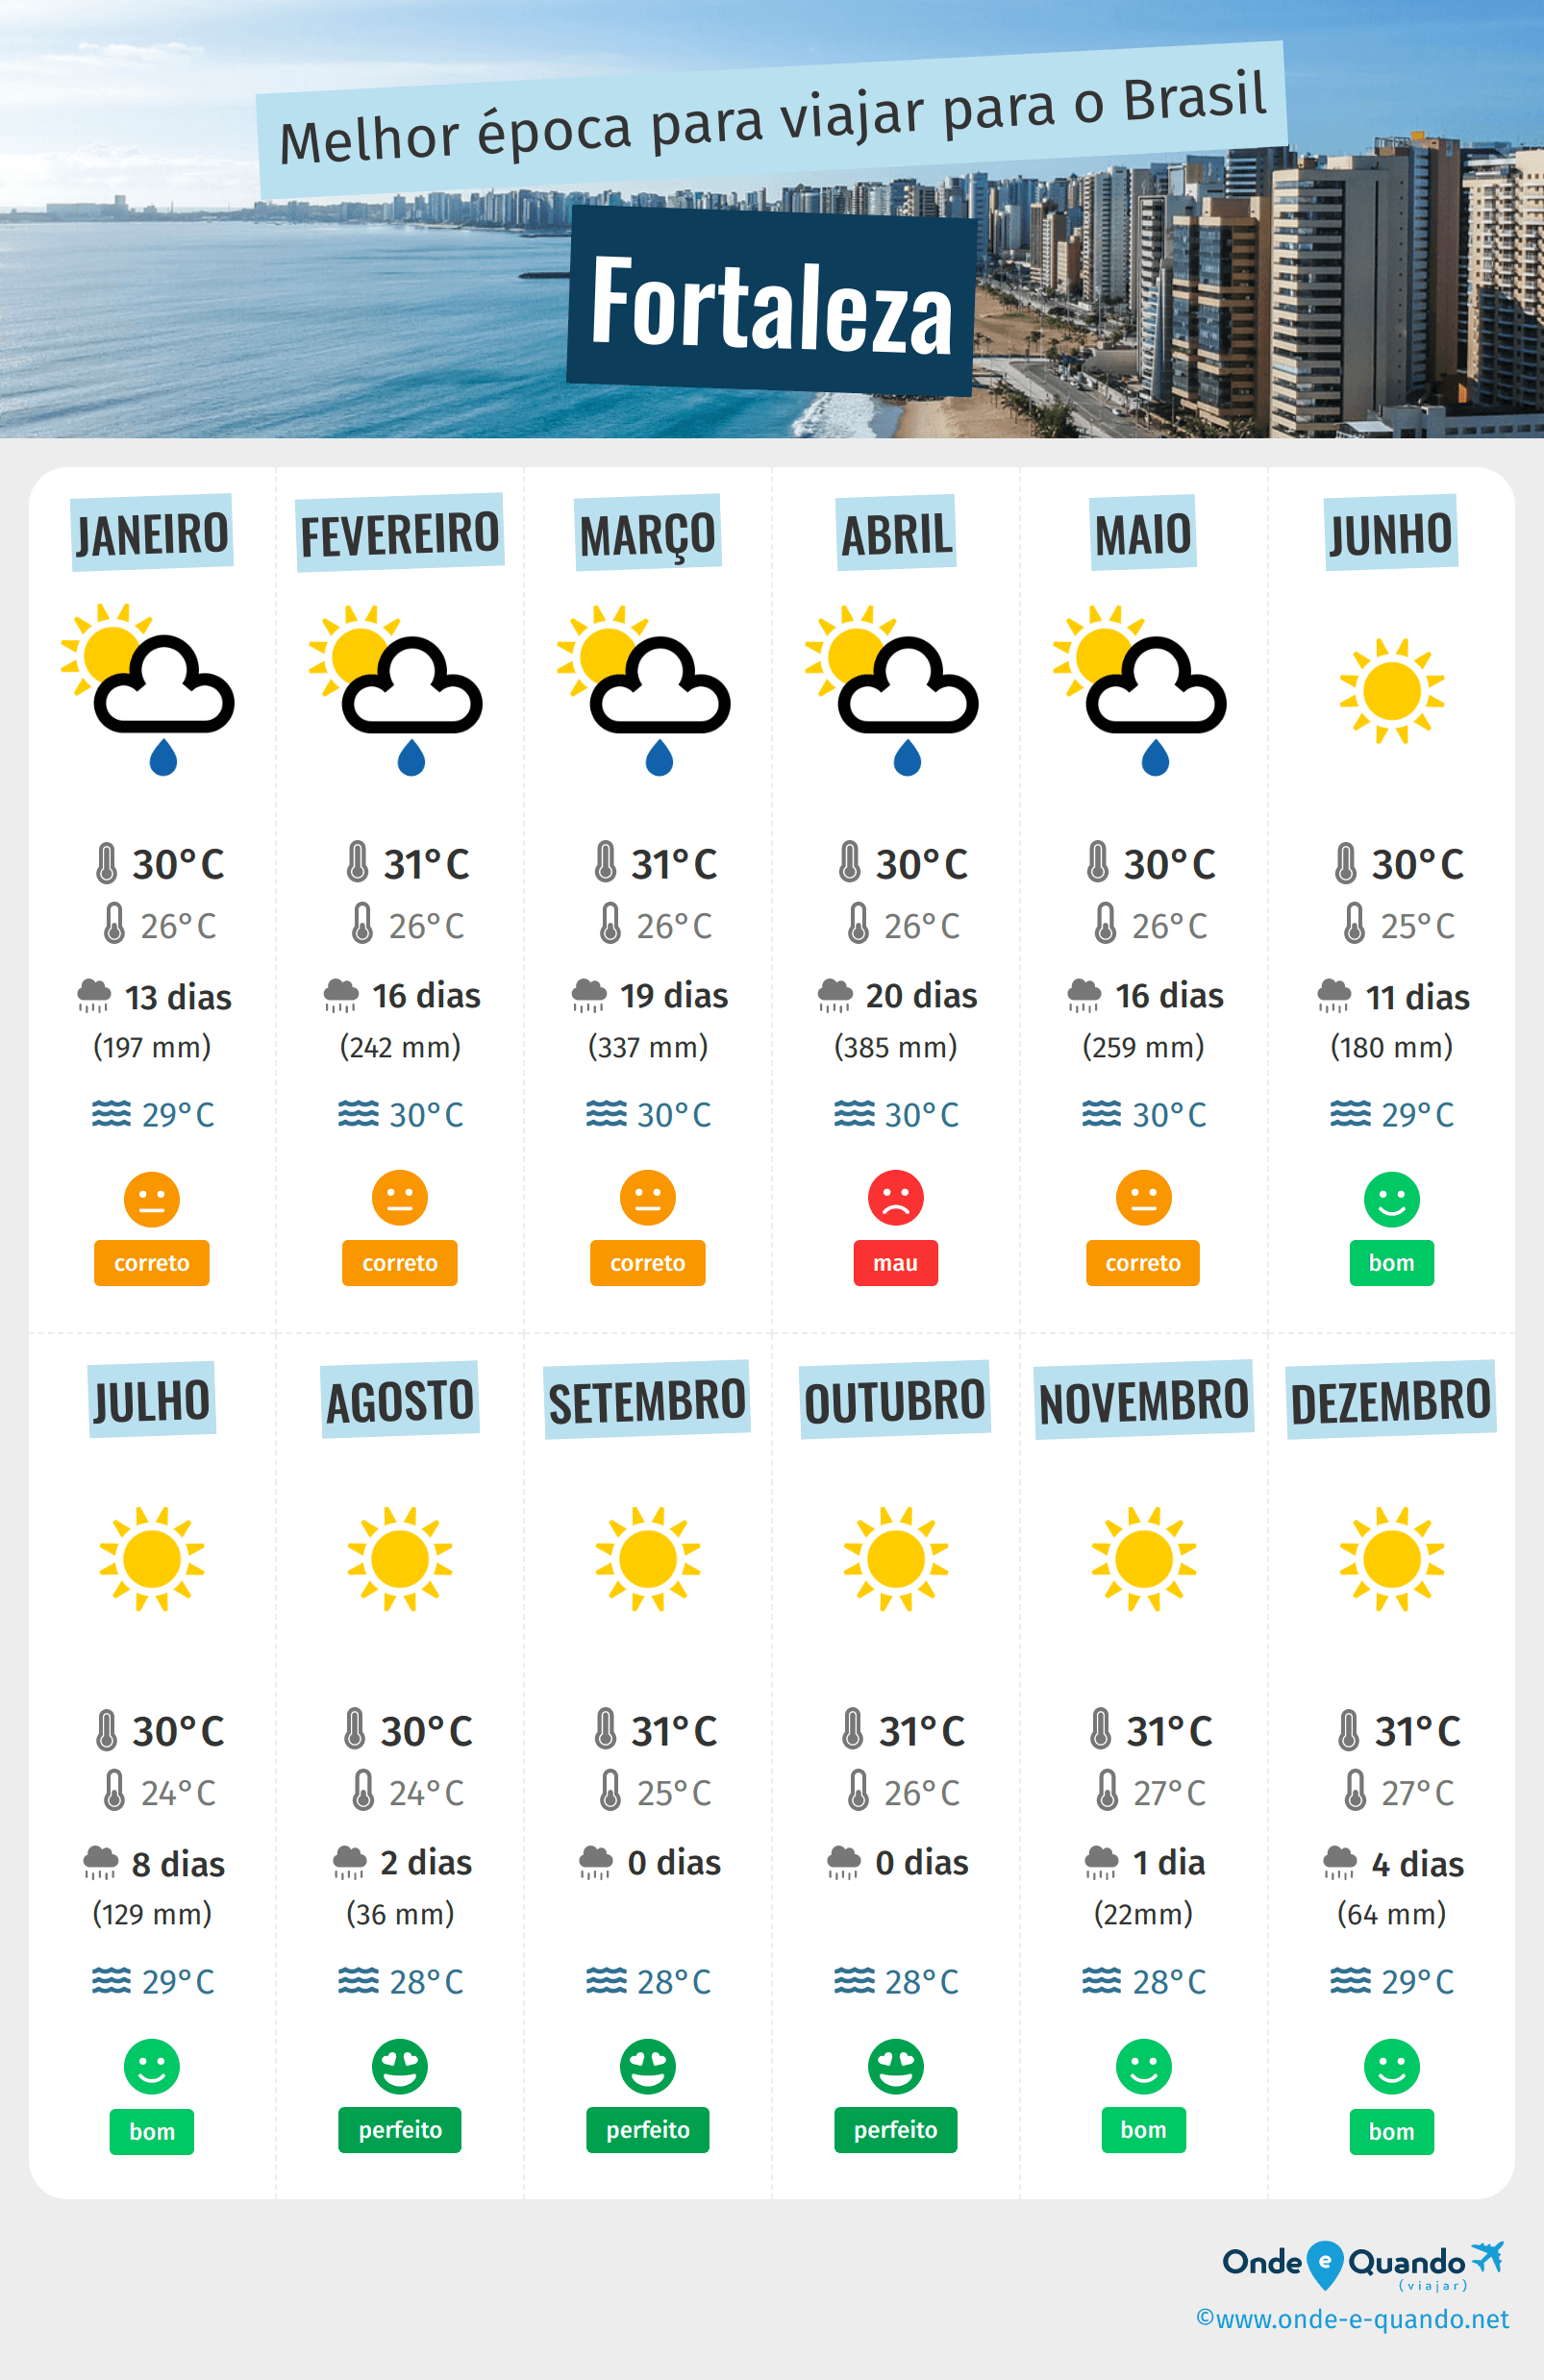 Infografia dos melhores períodos para visitar Fortaleza